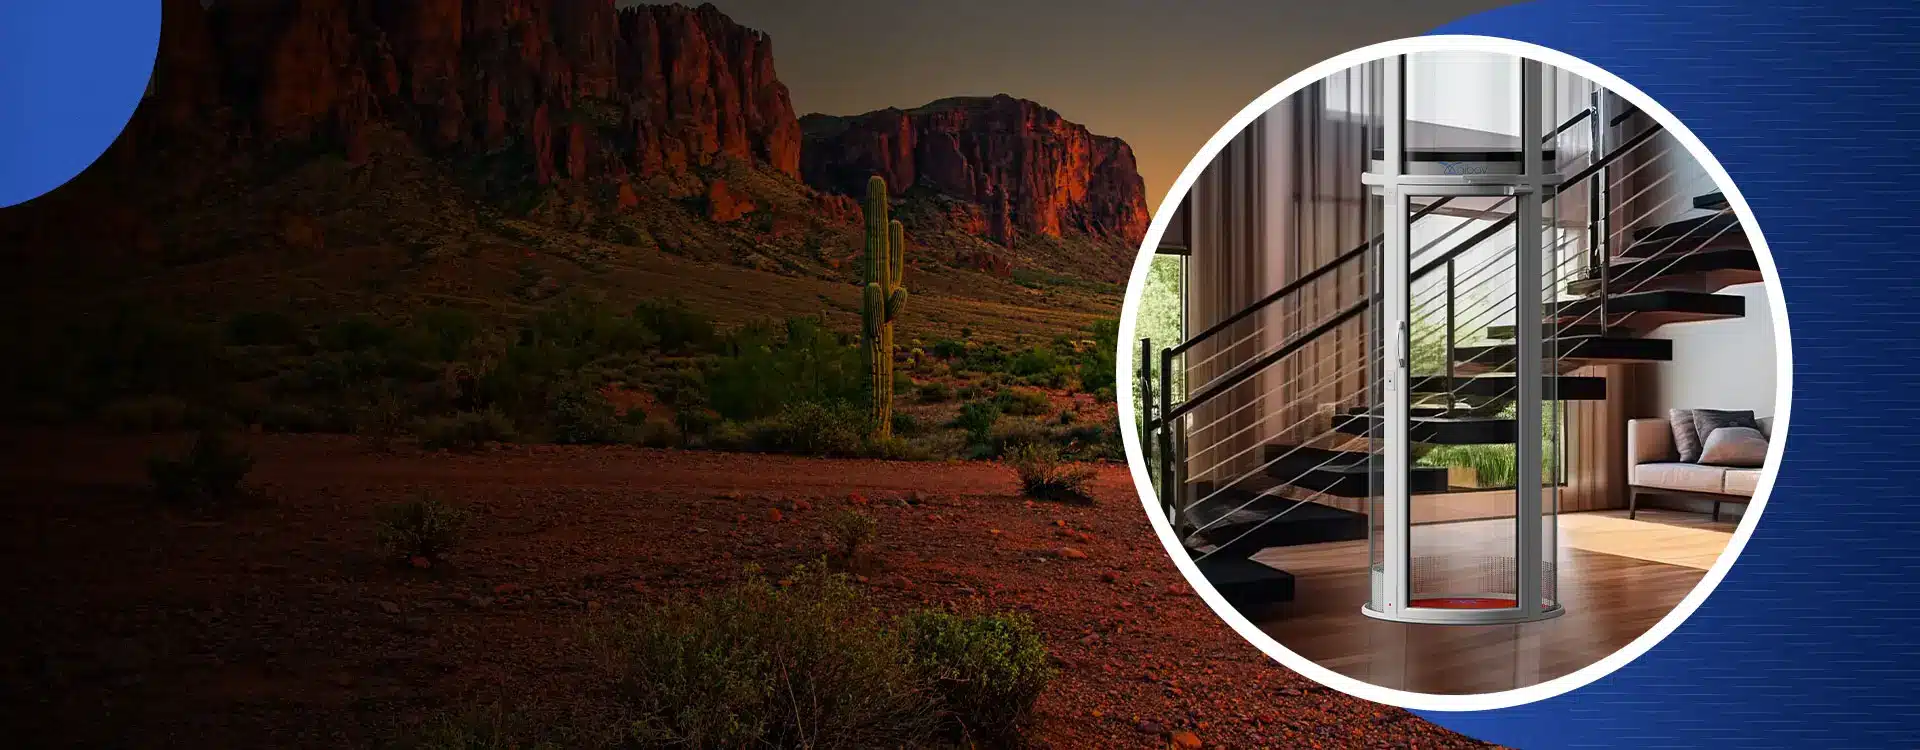 Domestic Lifts and Elevators in Arizona